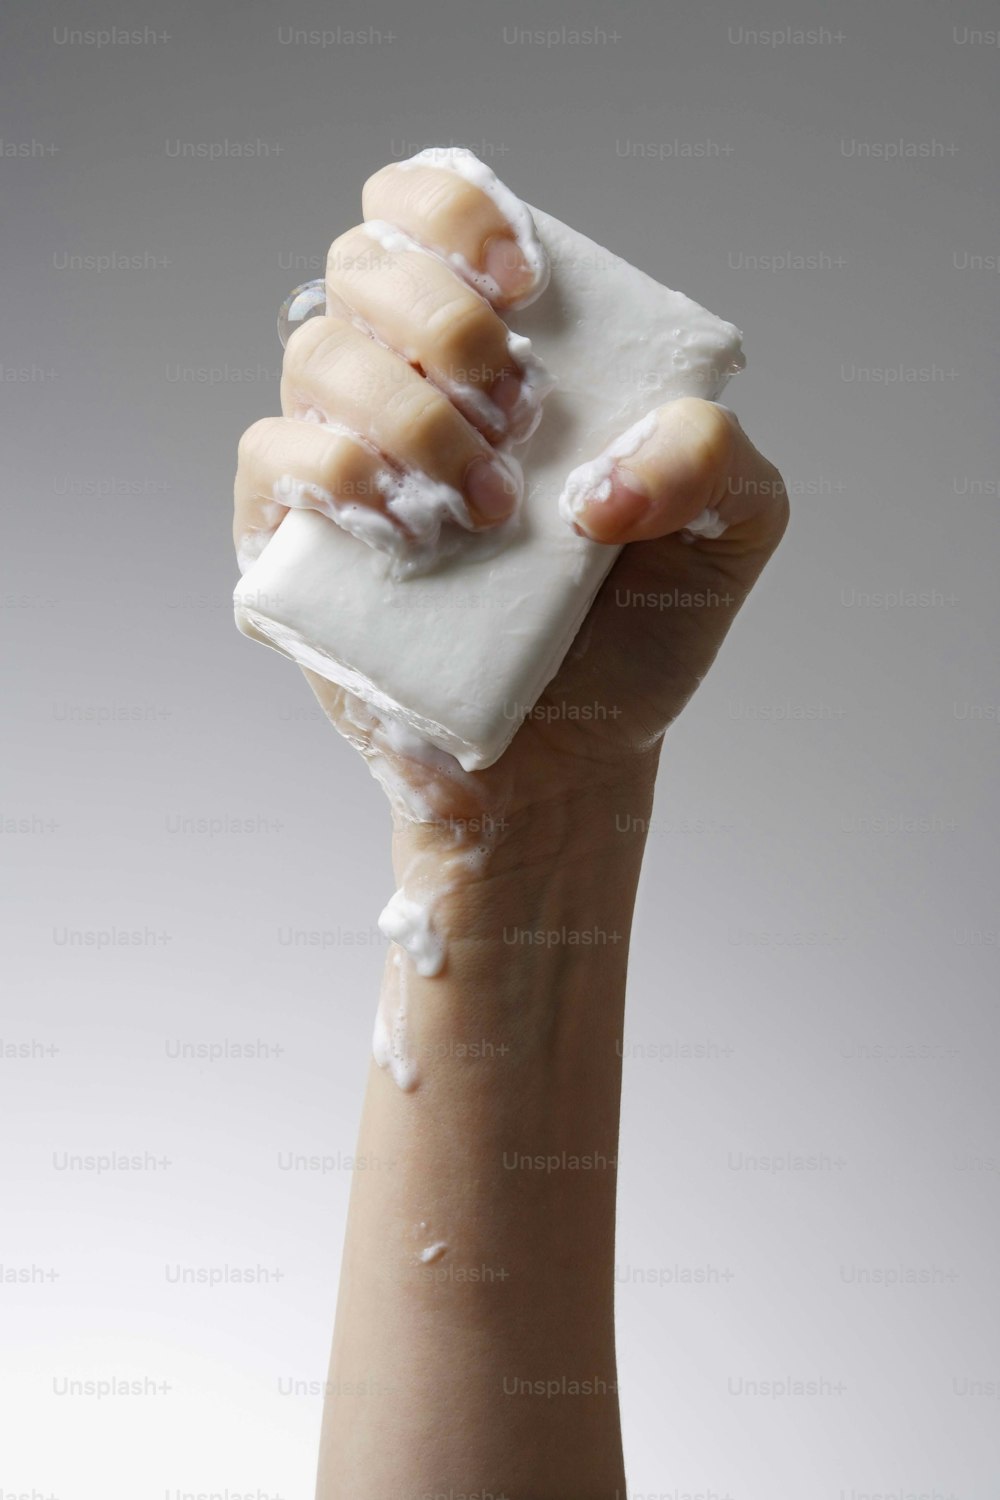 una mano sosteniendo un cuadrado de jabón blanco